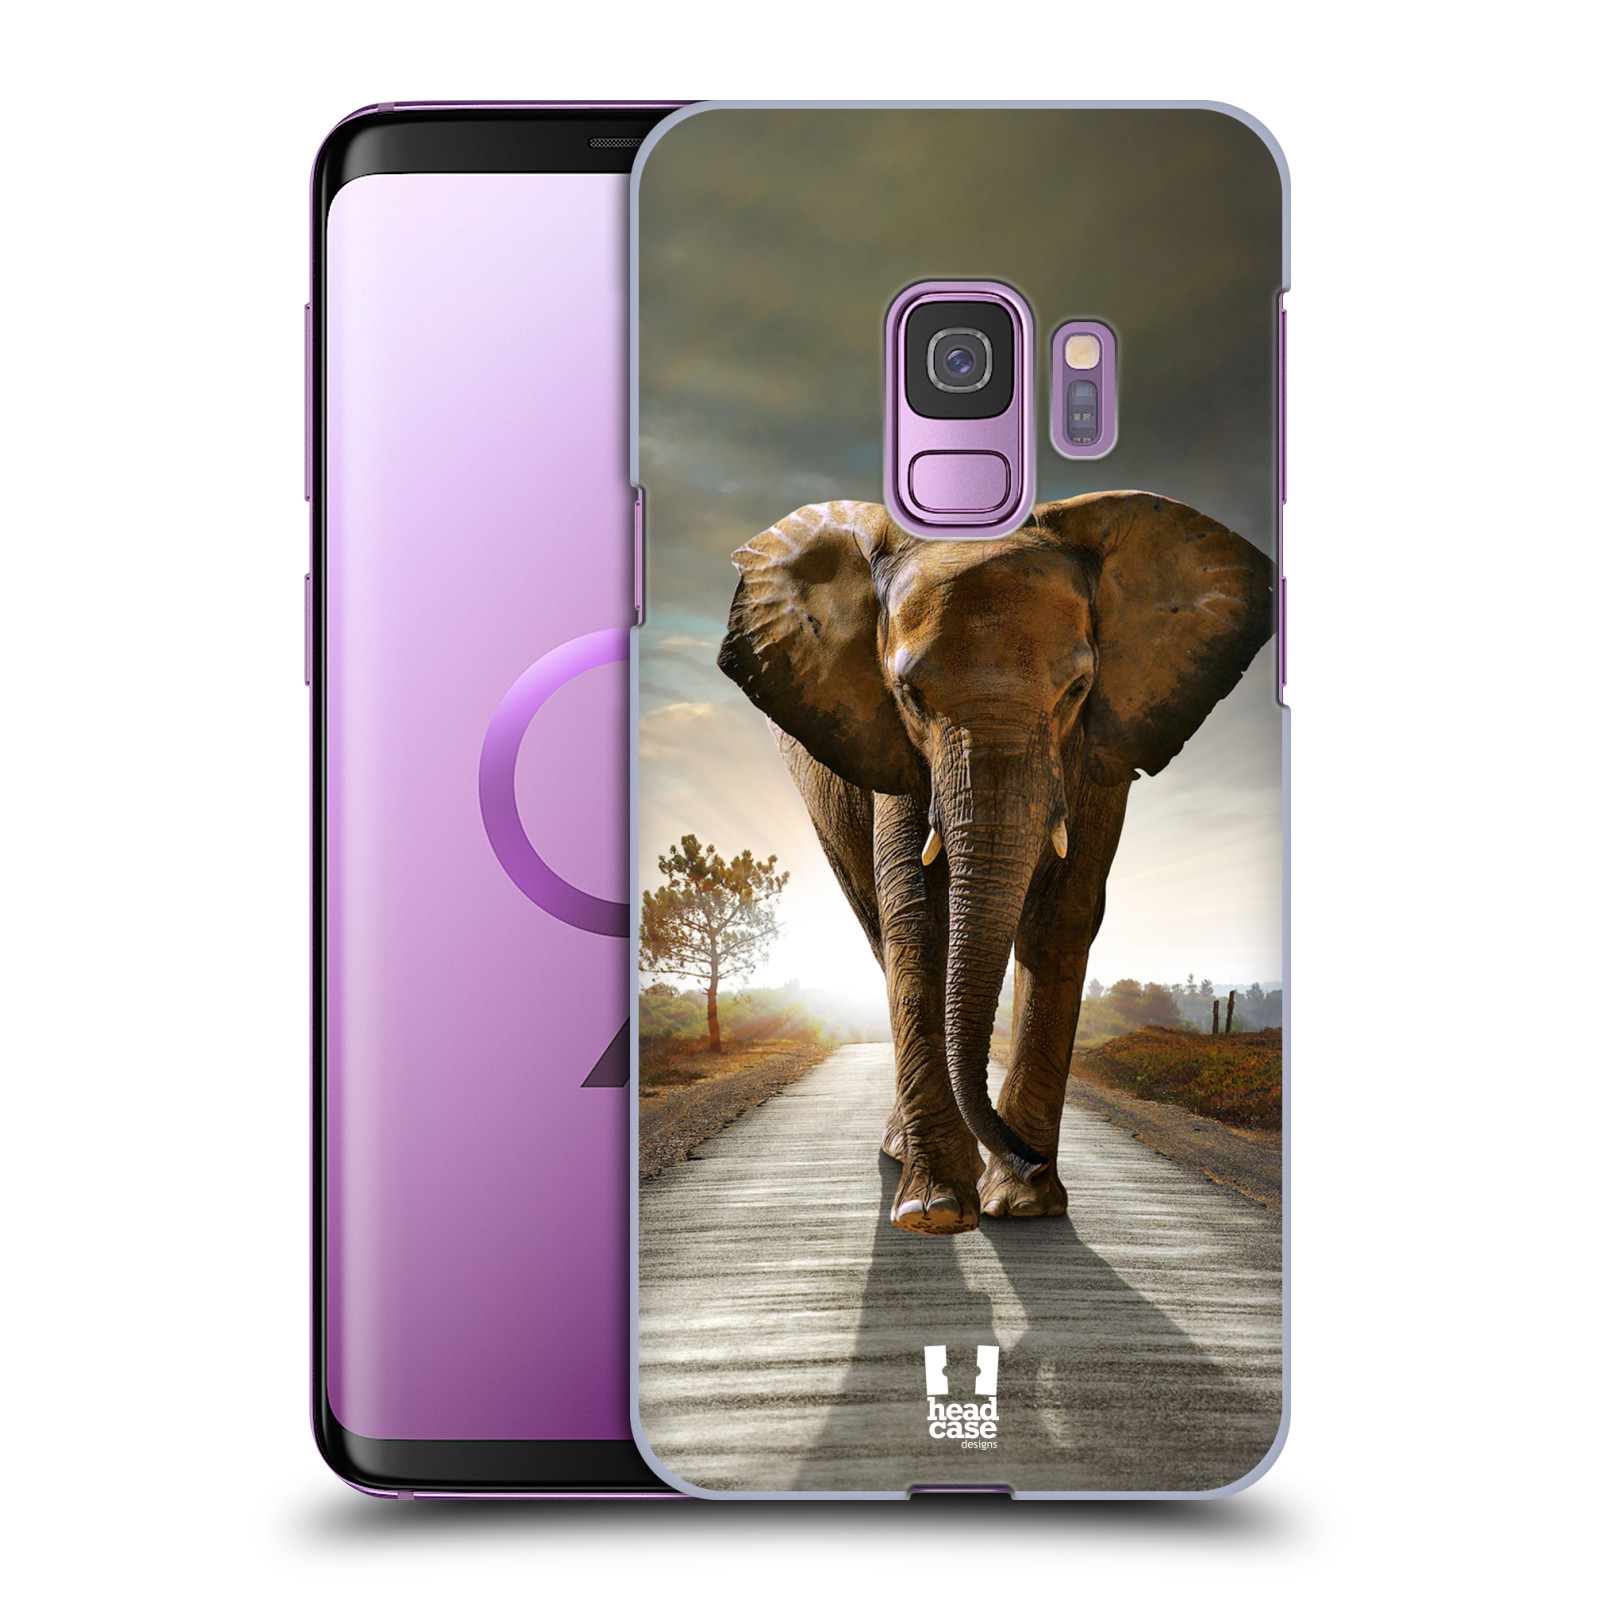 Zadní obal pro mobil Samsung Galaxy S9 - HEAD CASE - Svět zvířat kráčející slon